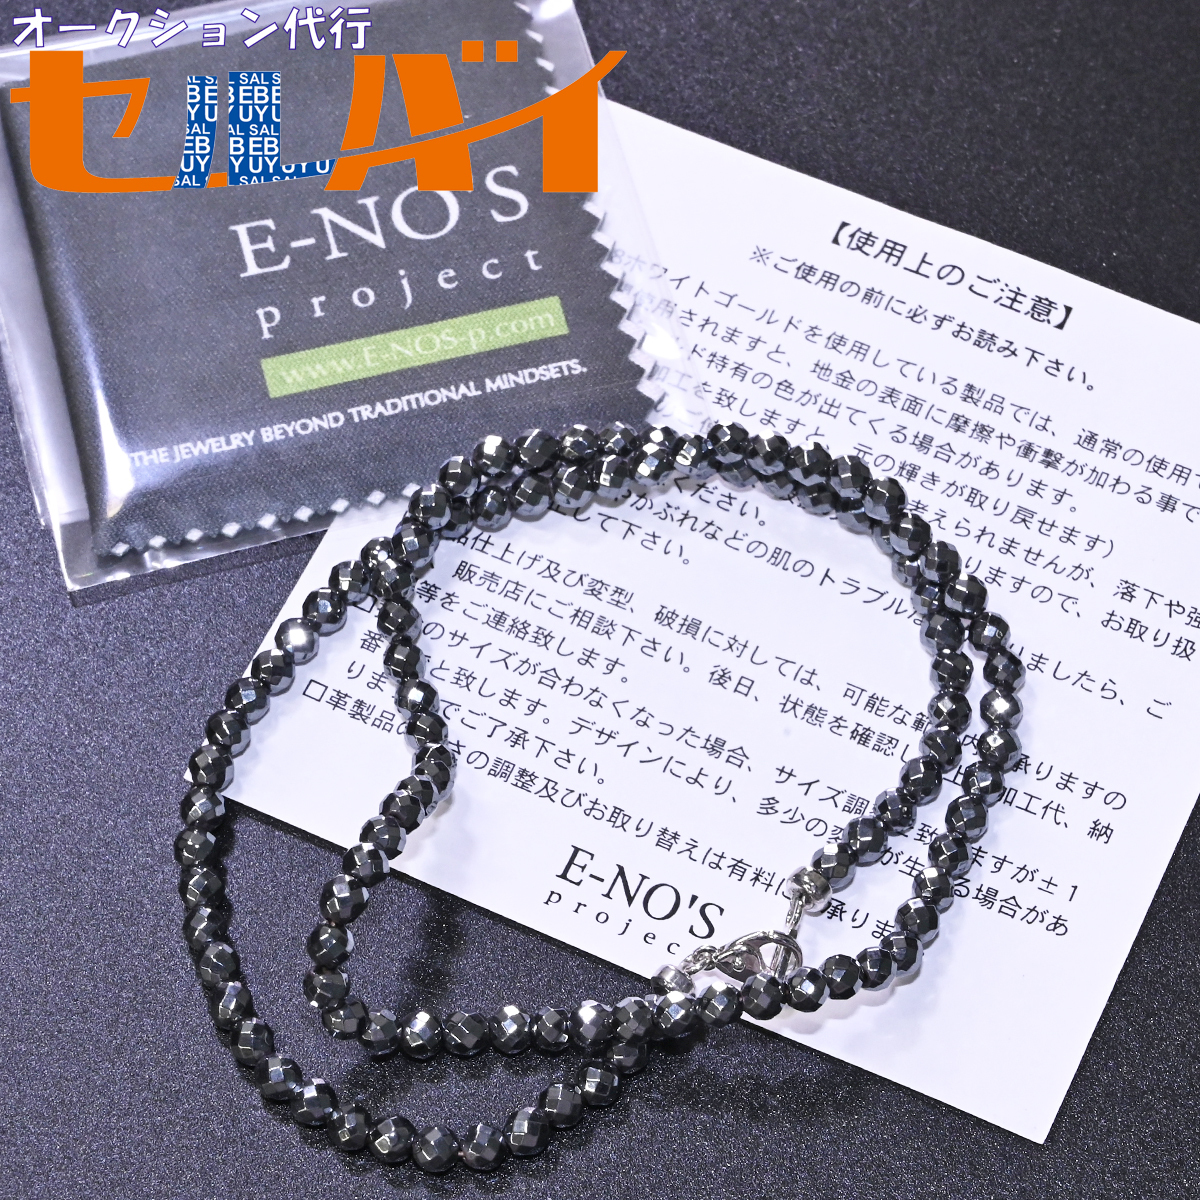 絶大な人気を誇る E-NO'S project ネックレス ネックレス